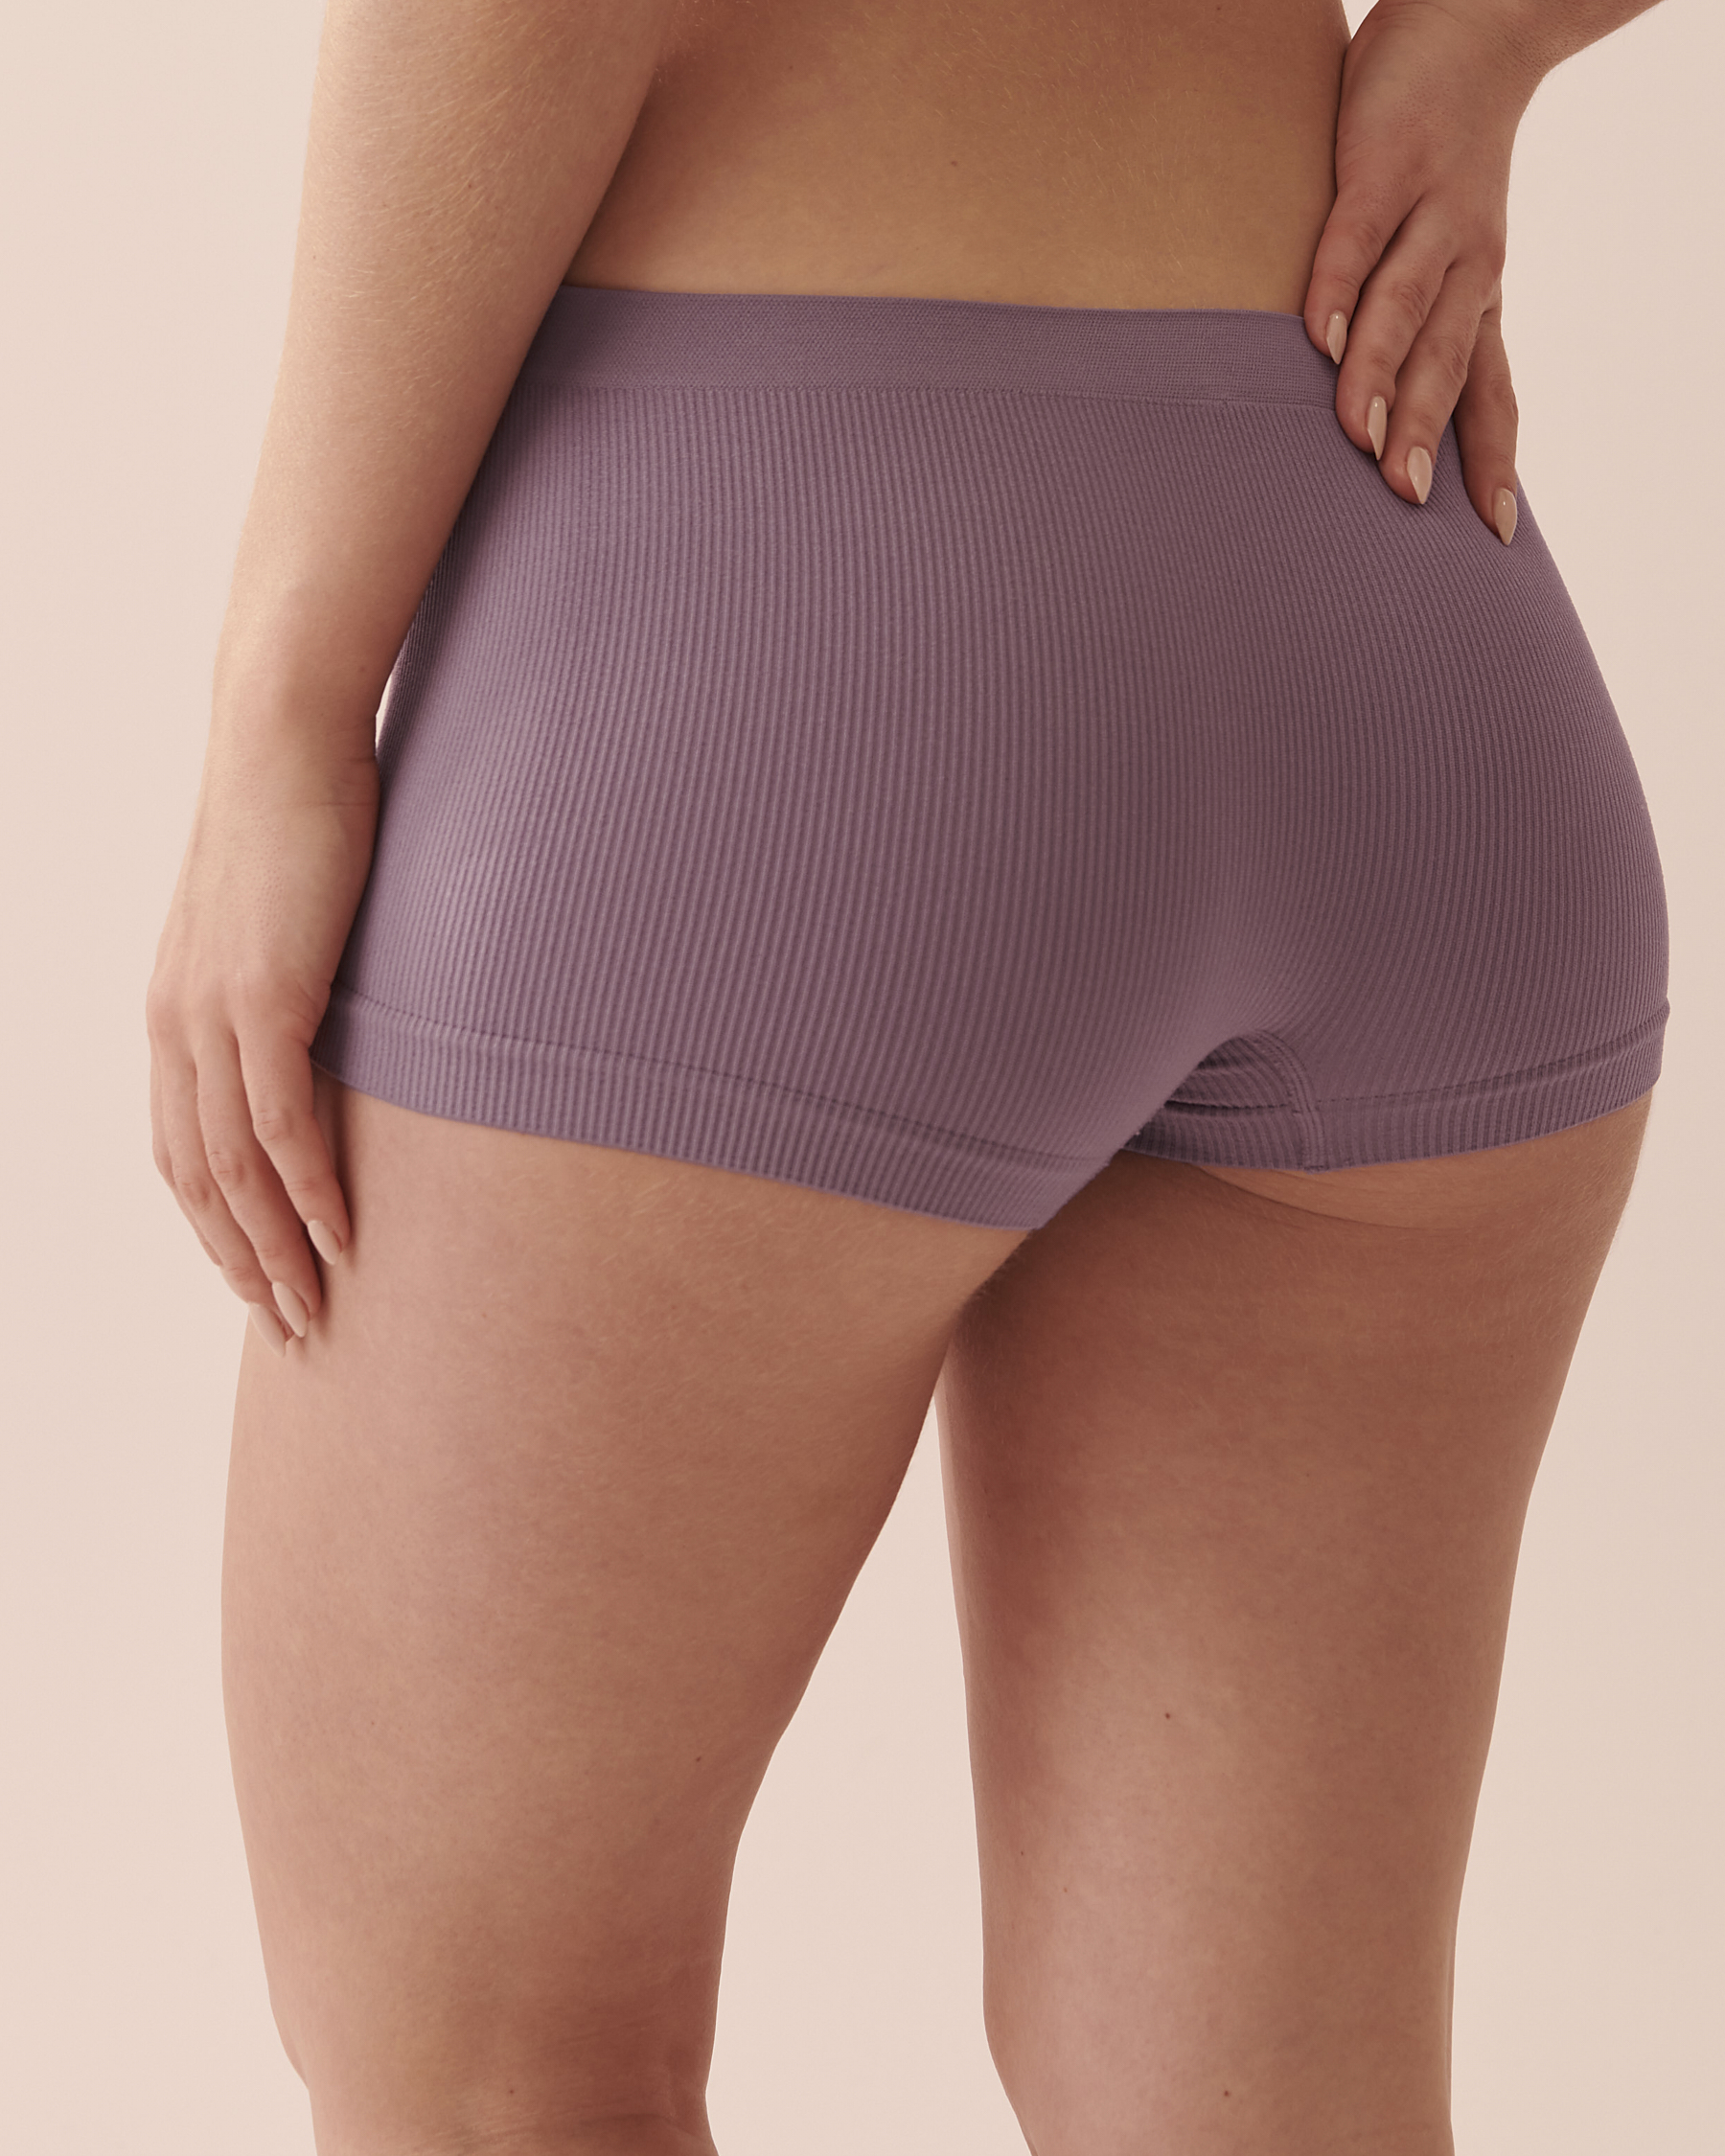 Women's Seamless Underwear Cotton Panty Lingerie Boyleg Underwear #A002